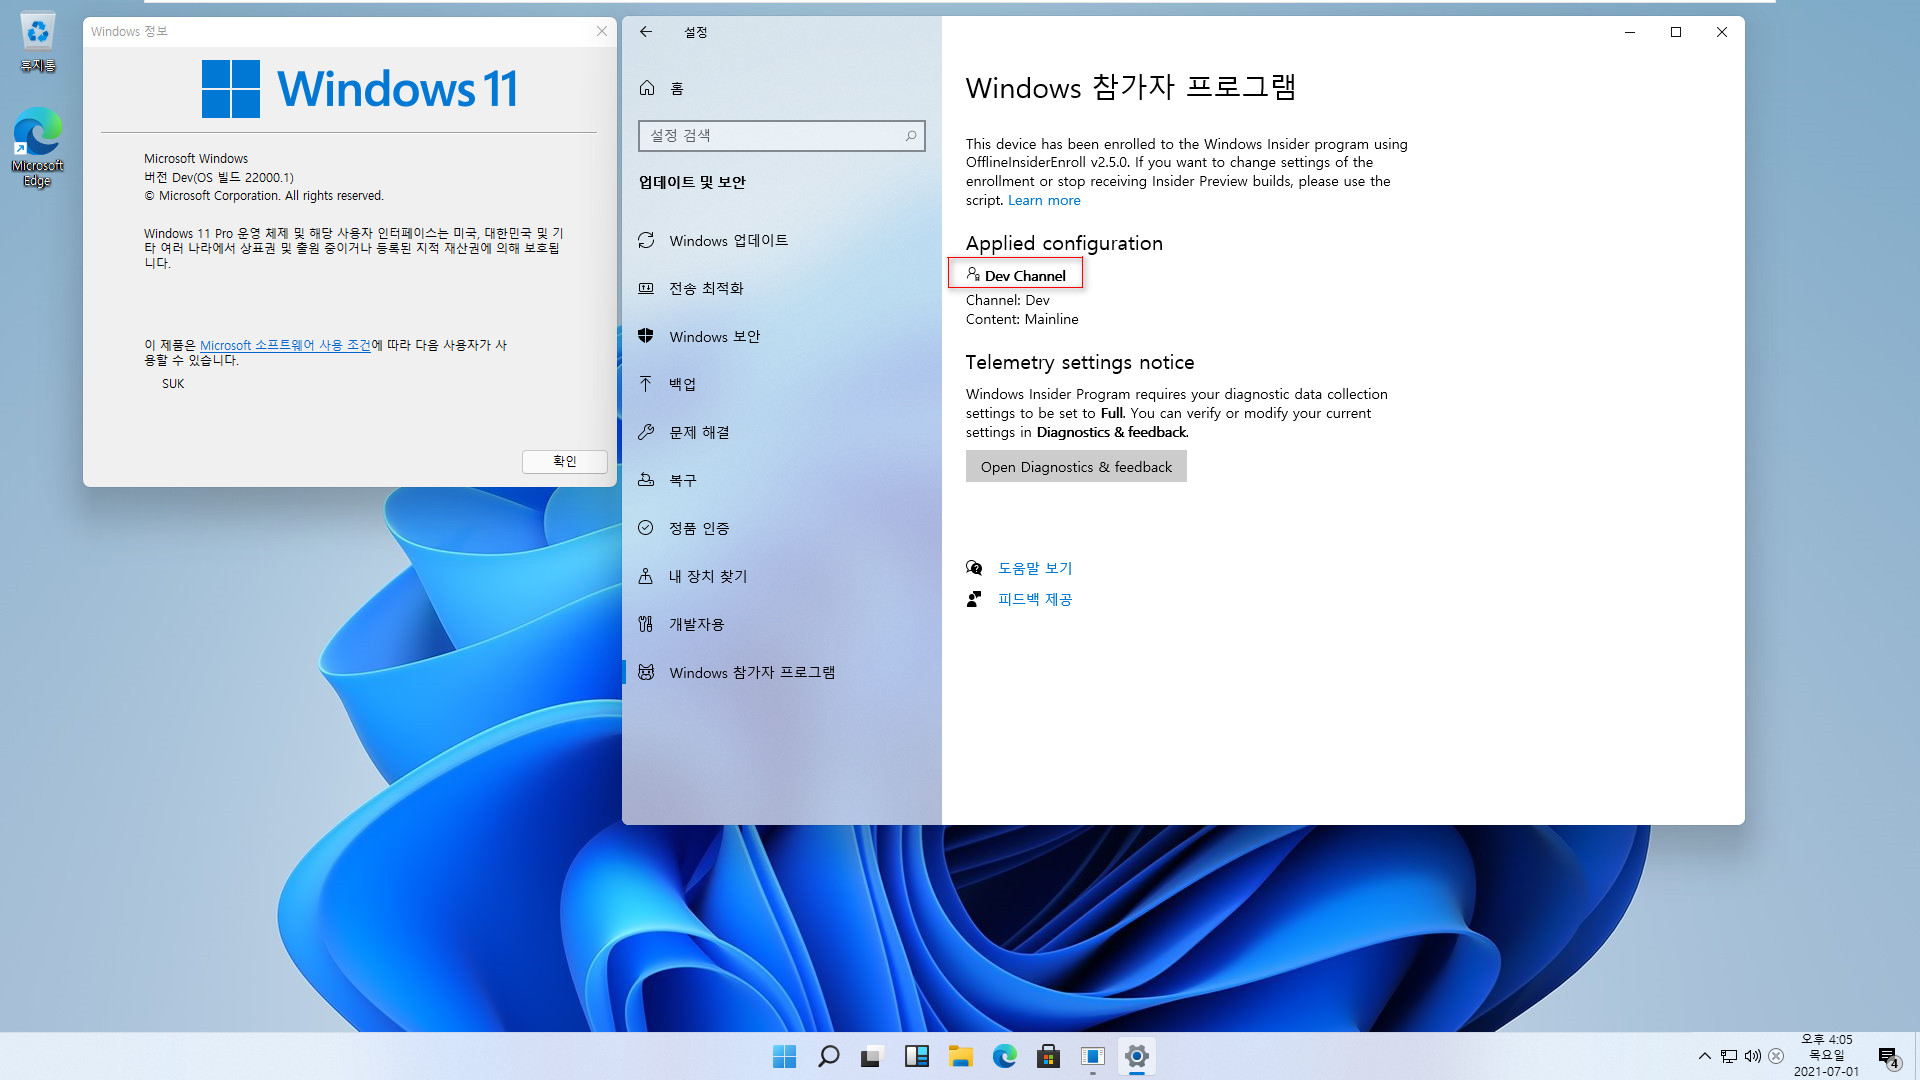 최초의 Windows 11 버전 21H2 - 22000.51 빌드와 22000.1 빌드 차이점들 - 22000.51 누적 업데이트 설치하기 위하여 개발자 채널 활성 2021-07-01_160544.jpg